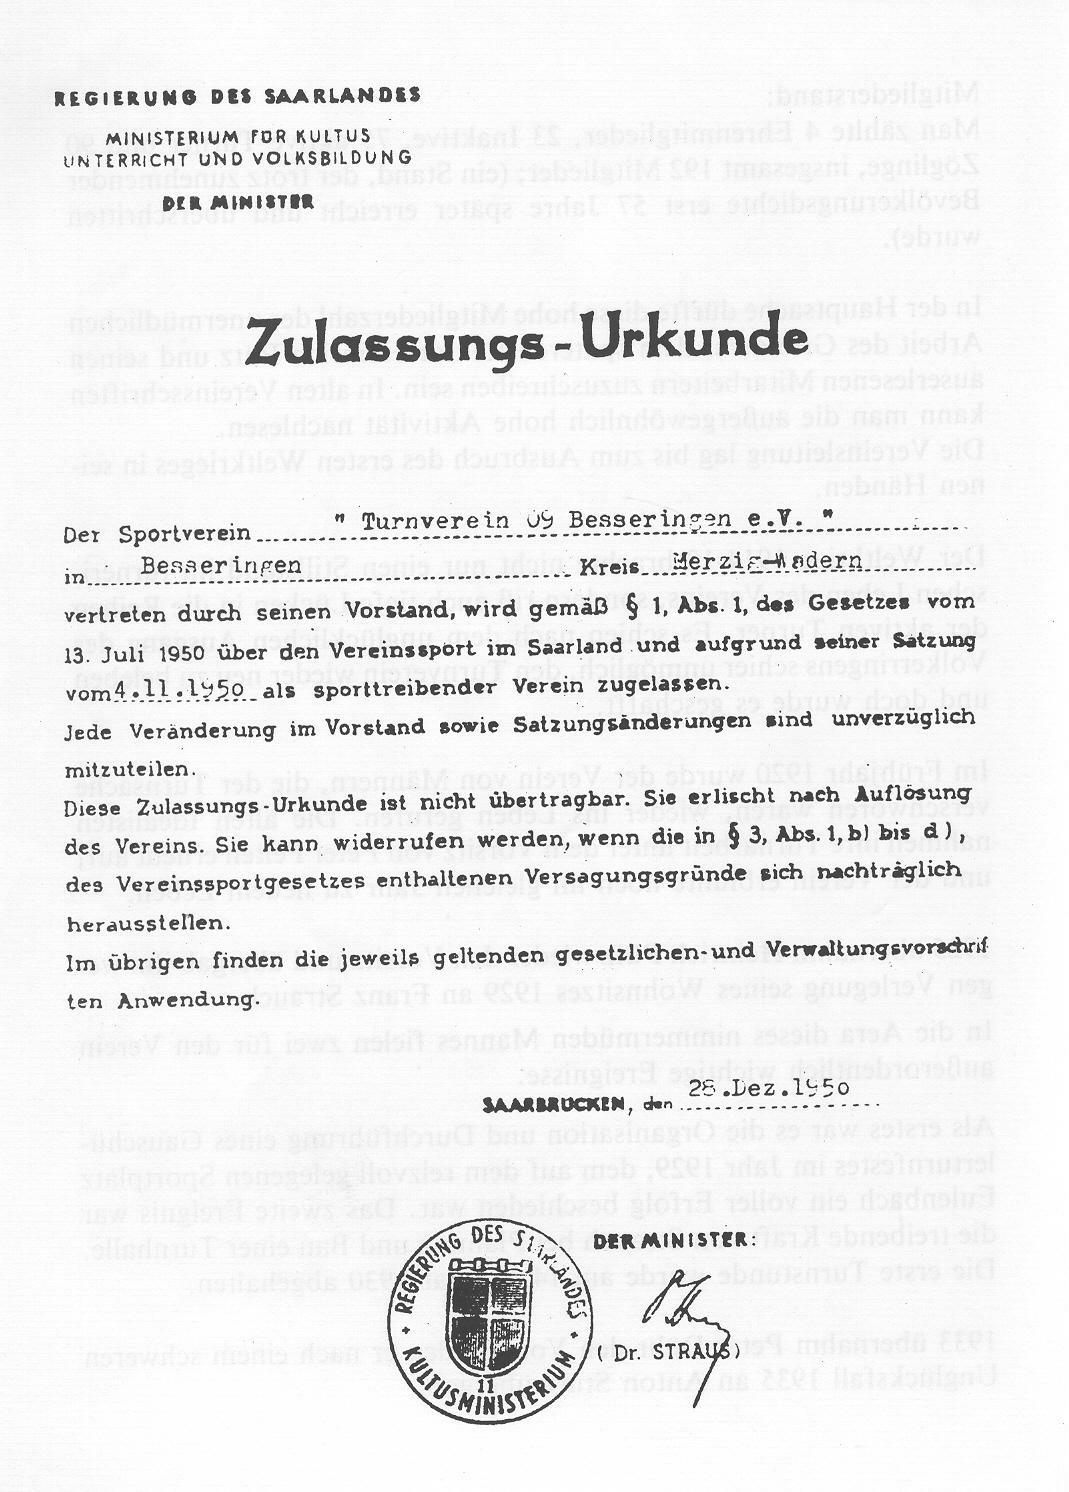 Zulassungs-Urkunde 1950